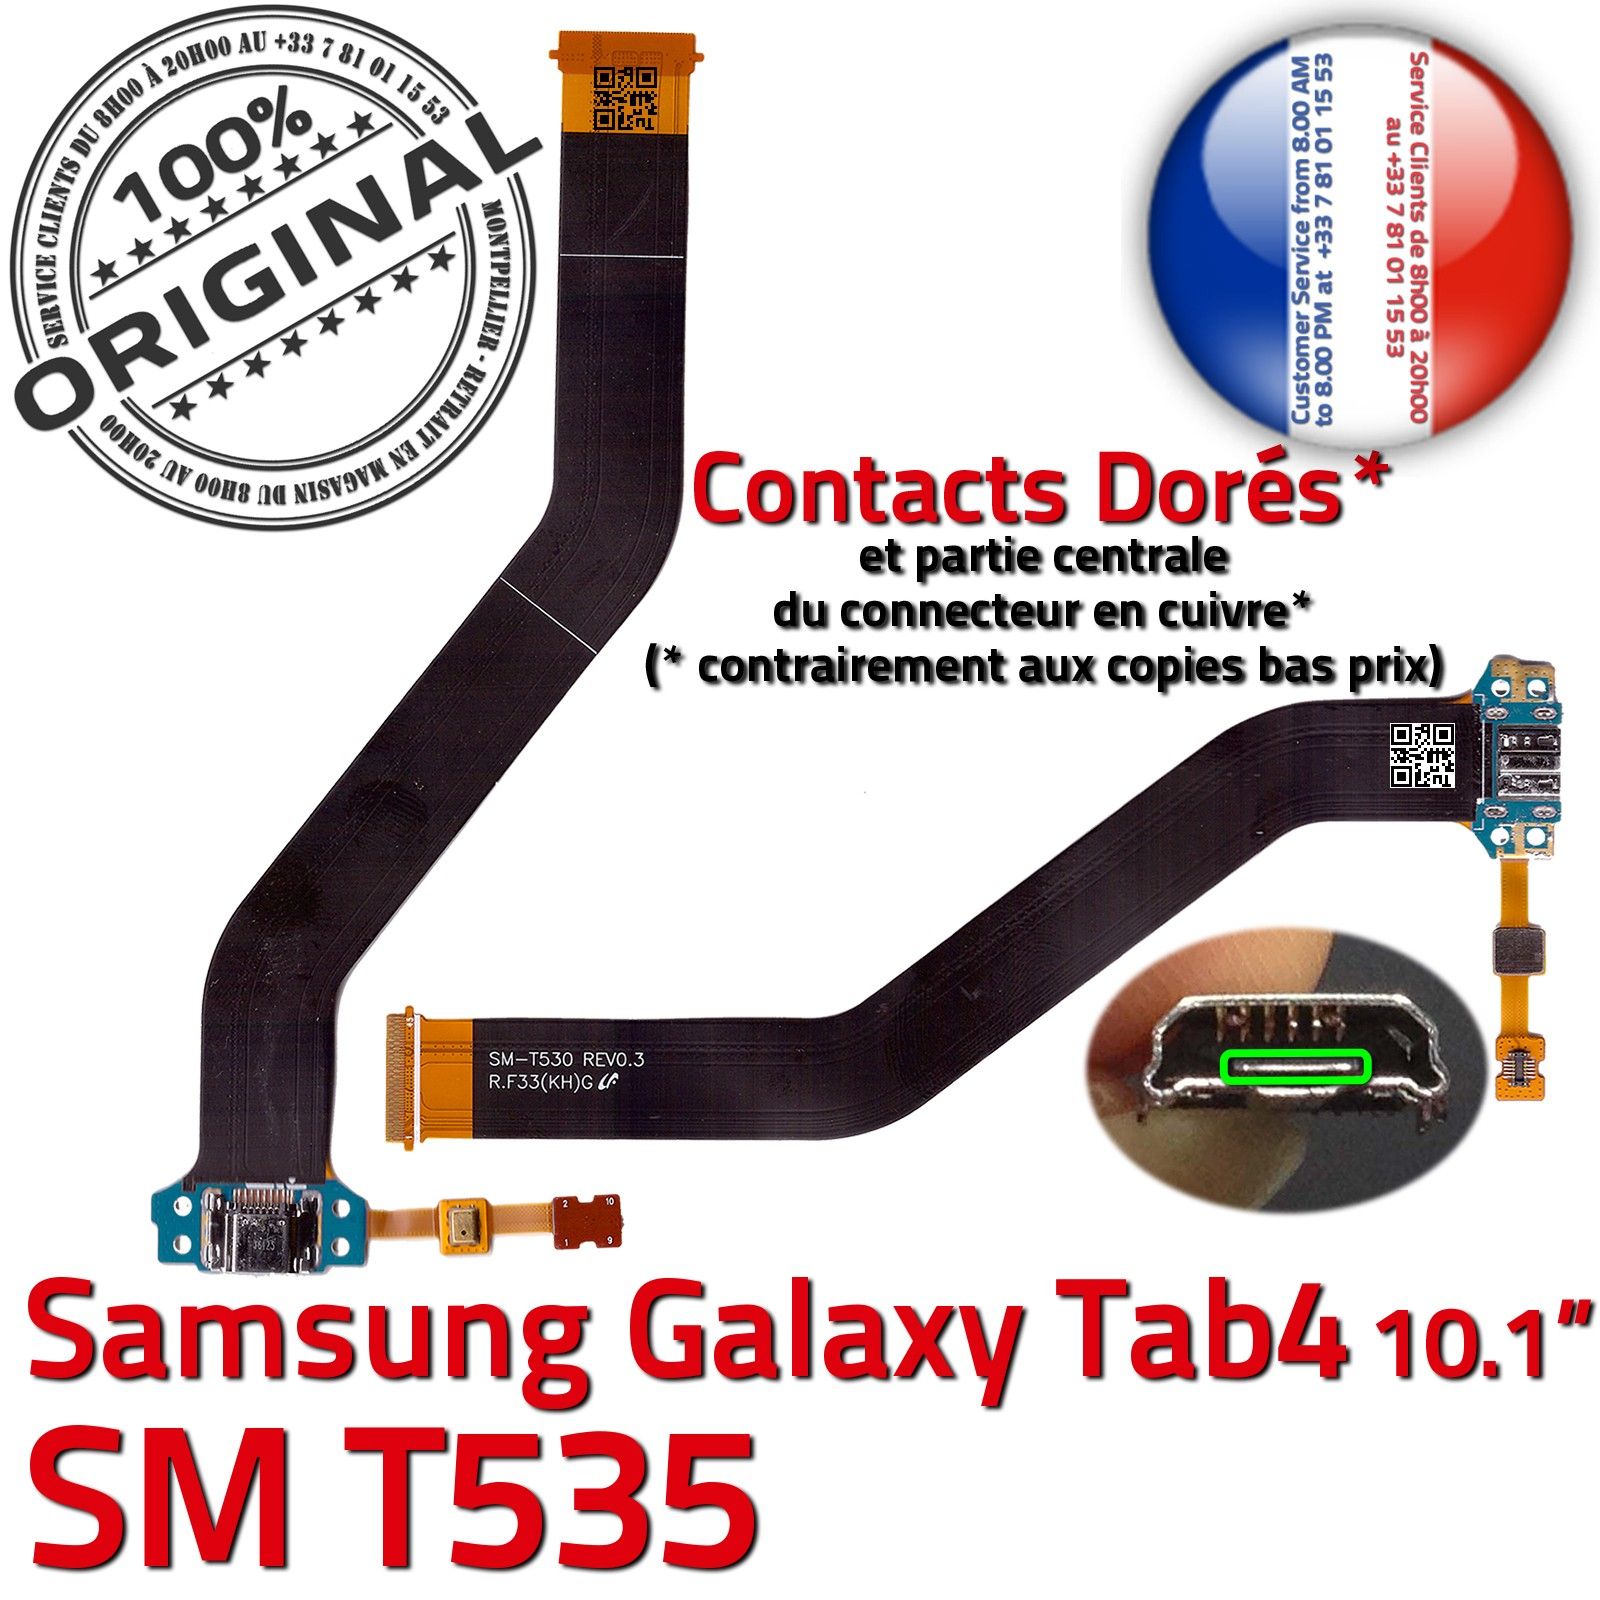 ORIGINAL Samsung Galaxy TAB 4 SM T535 Connecteur de Charge Chargeur MicroUSB Nappe OFFICIELLE Qualité Contacts Dorés Réparation